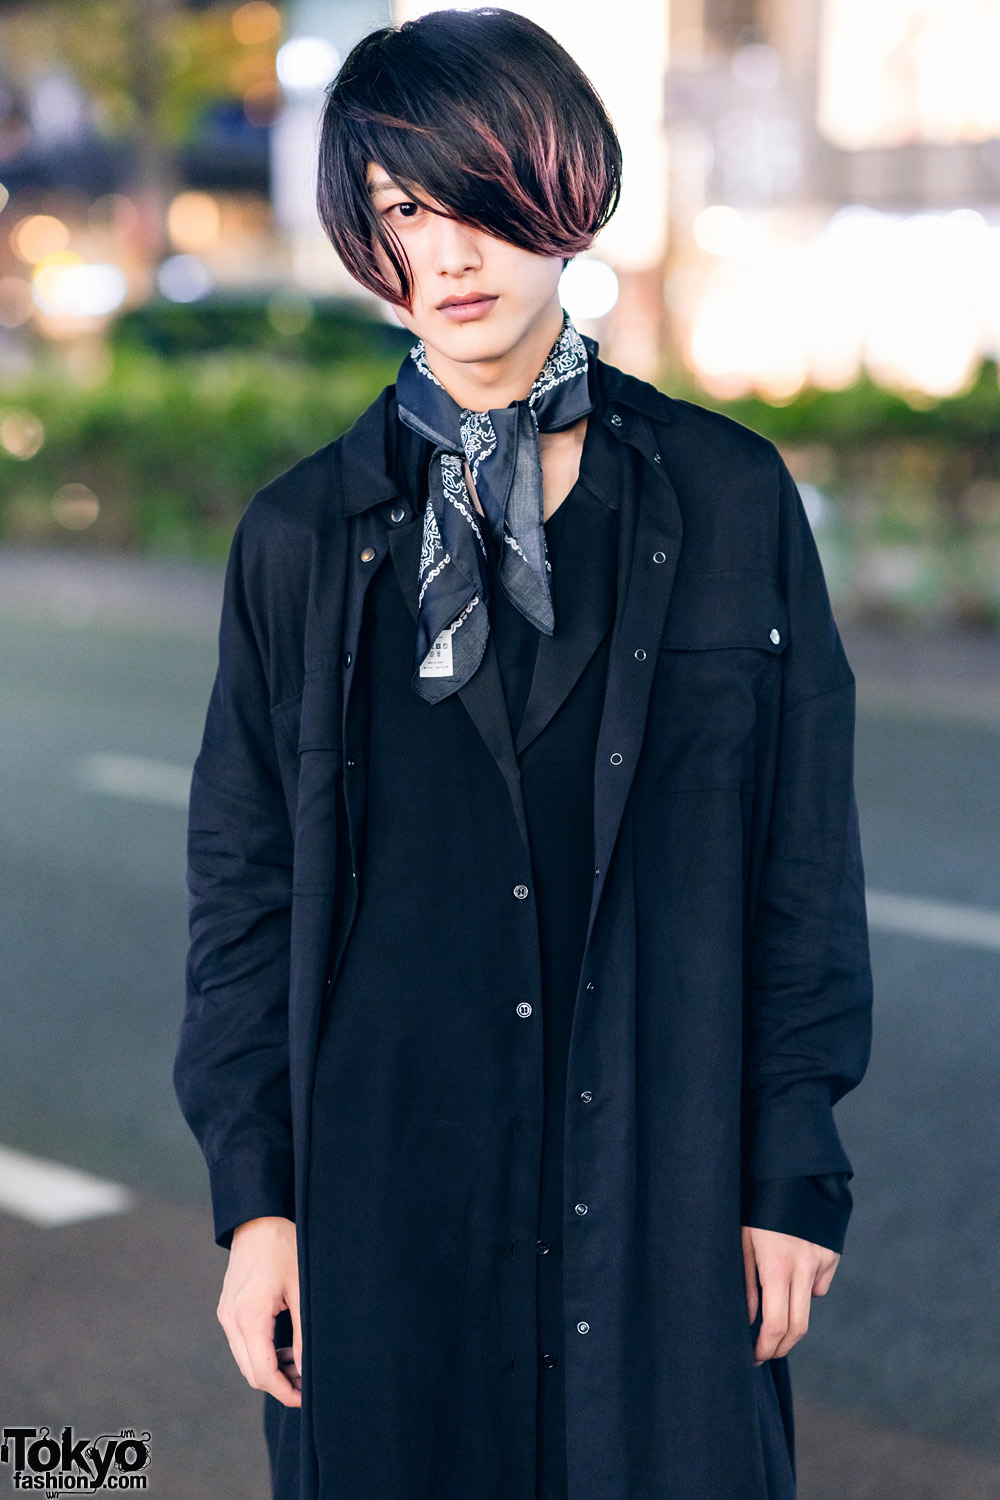 All Black Zara Menswear Look in Harajuku w/ Neck Scarf, Layered Tops ...